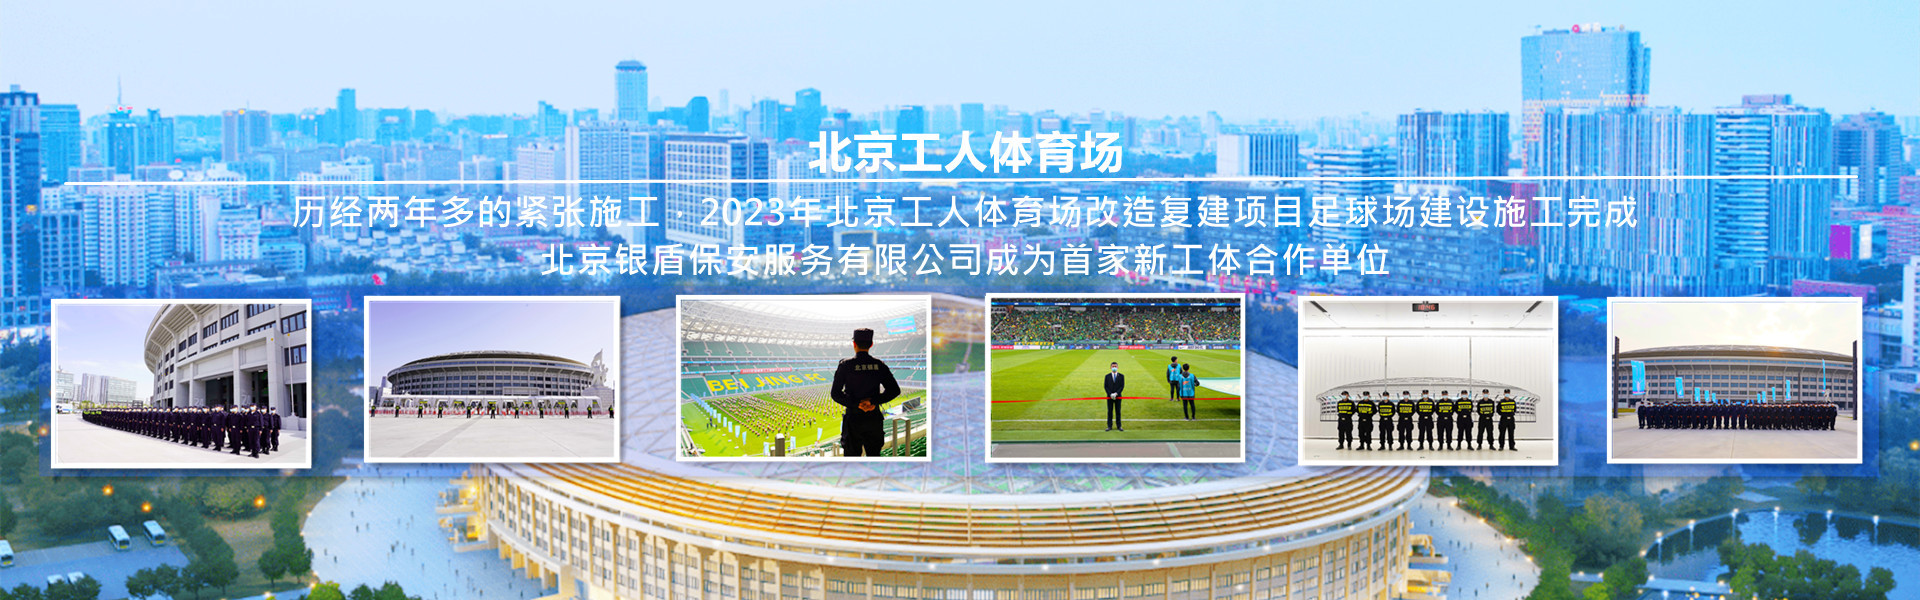 北京银盾保安服务有限公司为北京工人体育场提供安全守卫